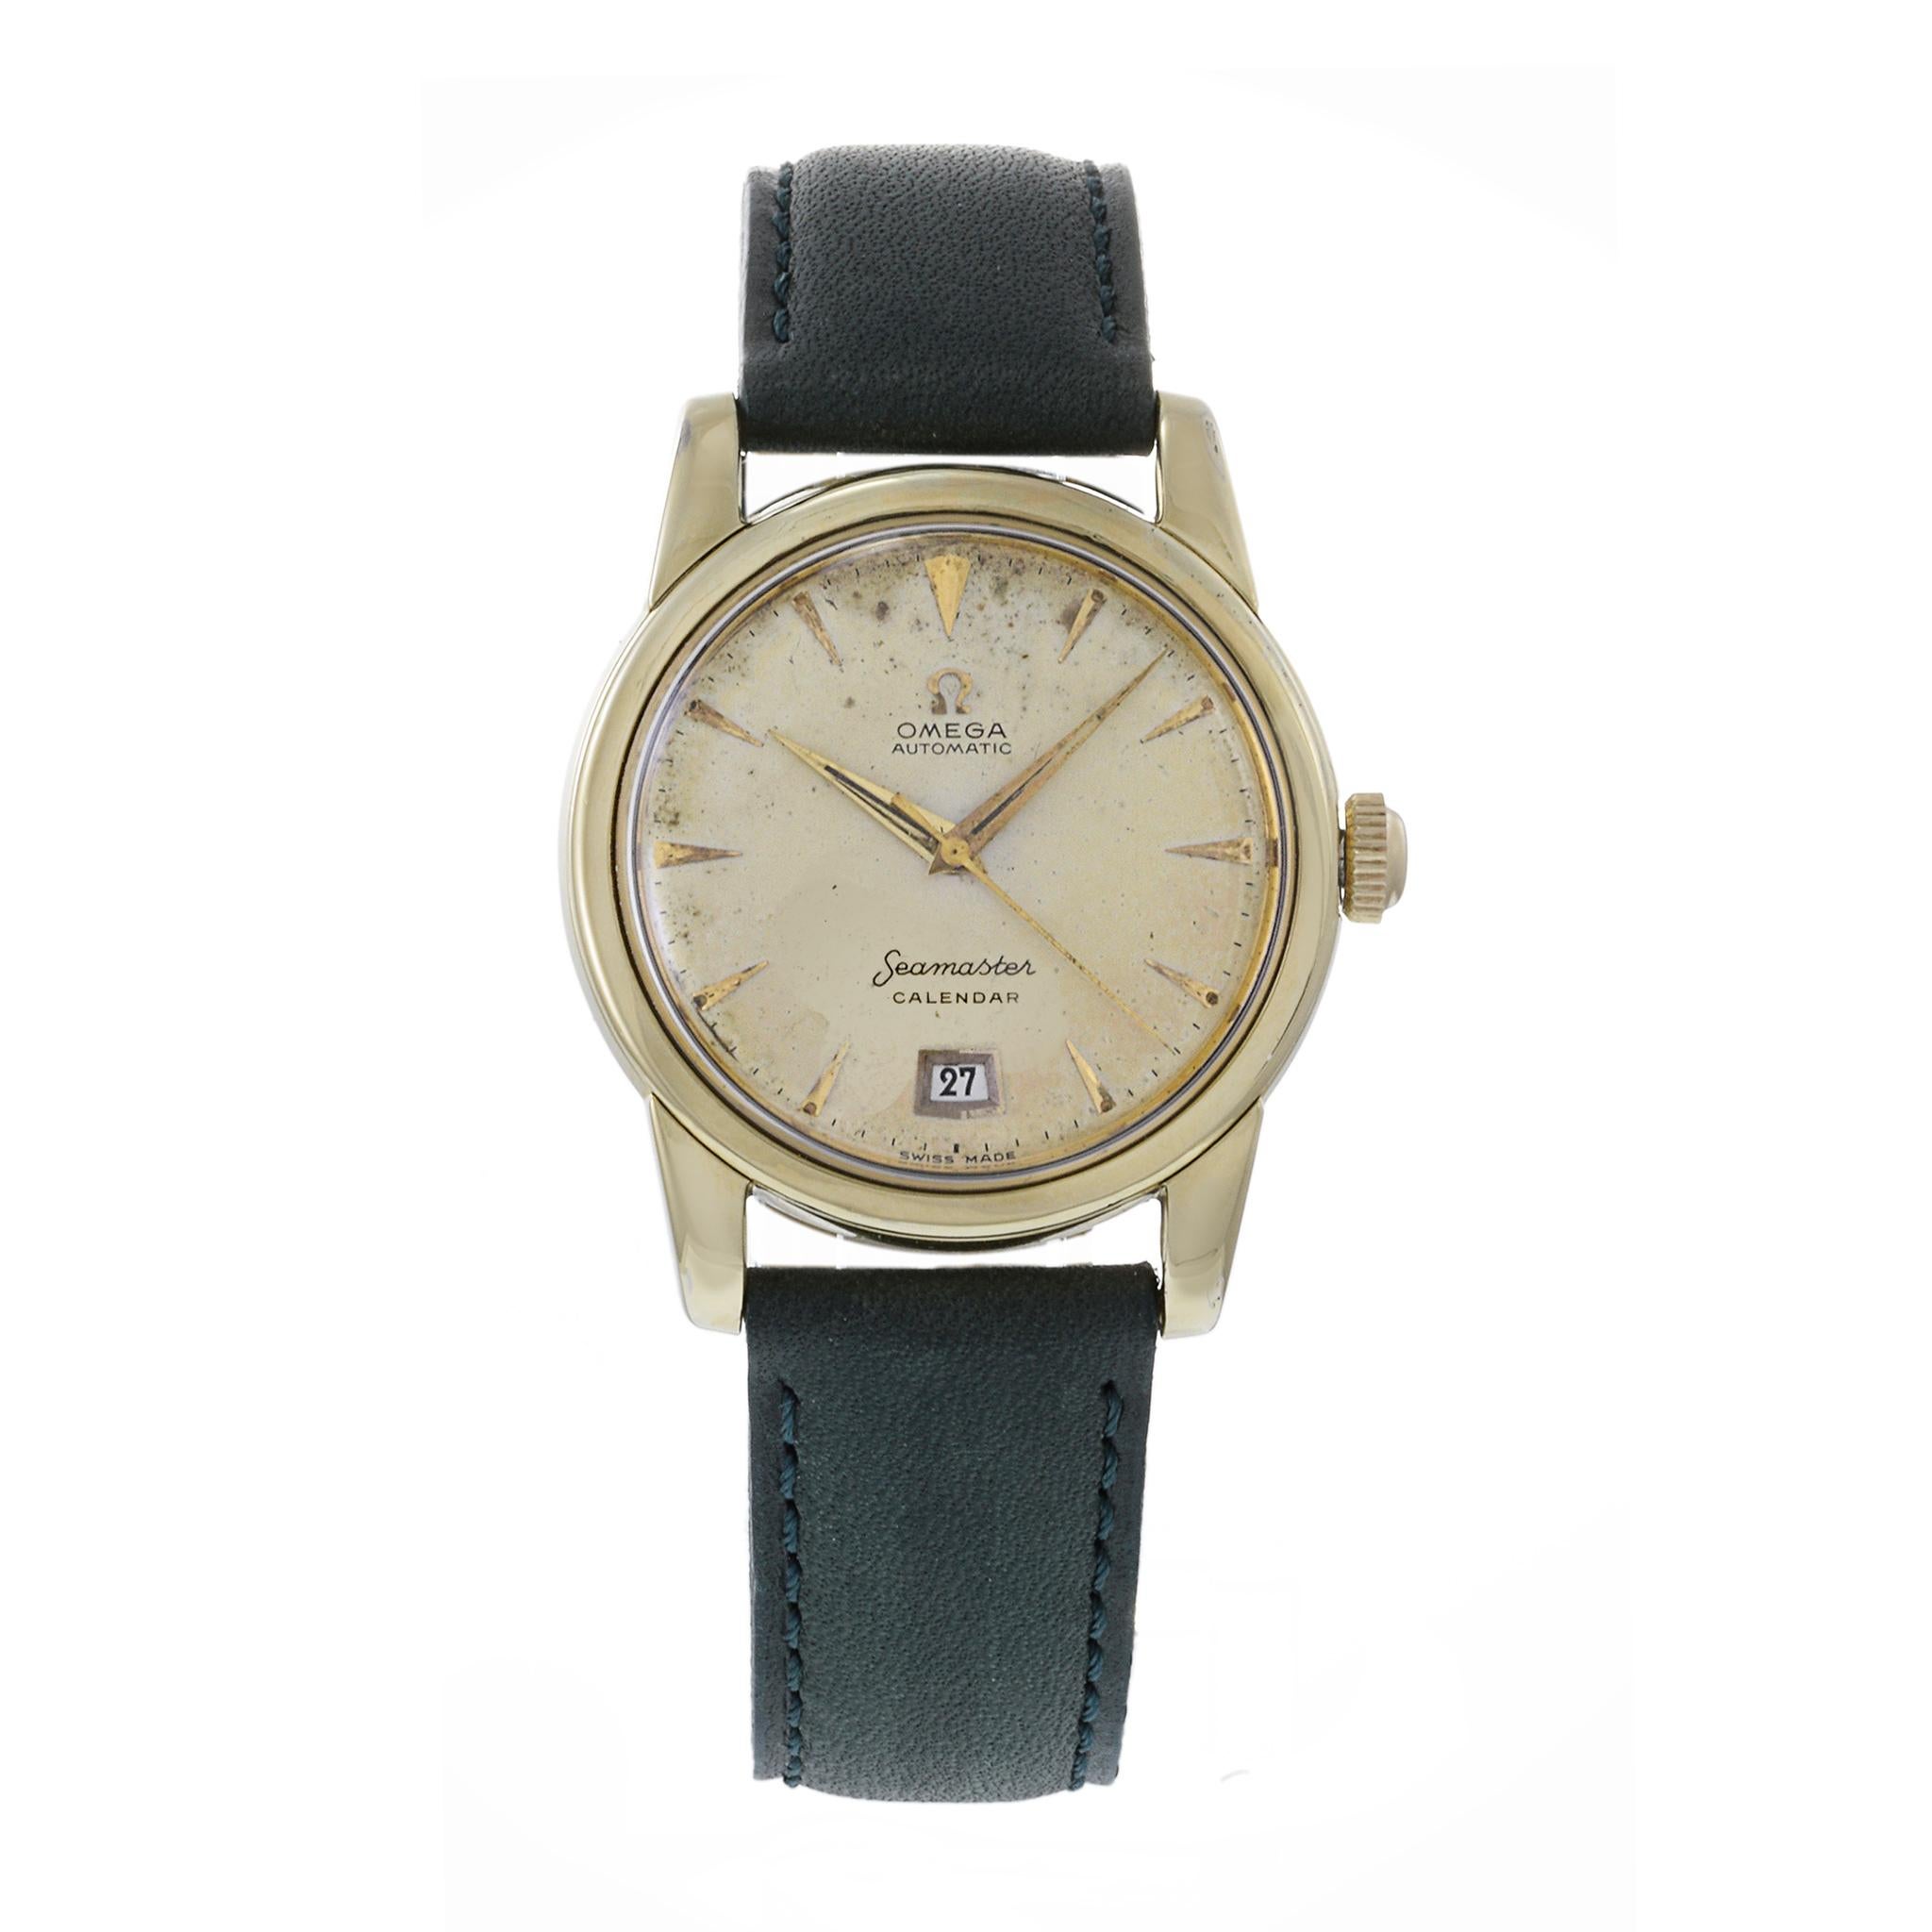 Die Omega Seamaster Calendar CK 2757 aus dem Jahr 1954 ist ein Vintage-Zeitmesser, der für sein 34-mm-Gehäuse aus Edelstahl mit goldener Lünette und Bandanstößen sowie für sein automatisches (mechanisches) Uhrwerk mit der Kalibernummer 355 bekannt